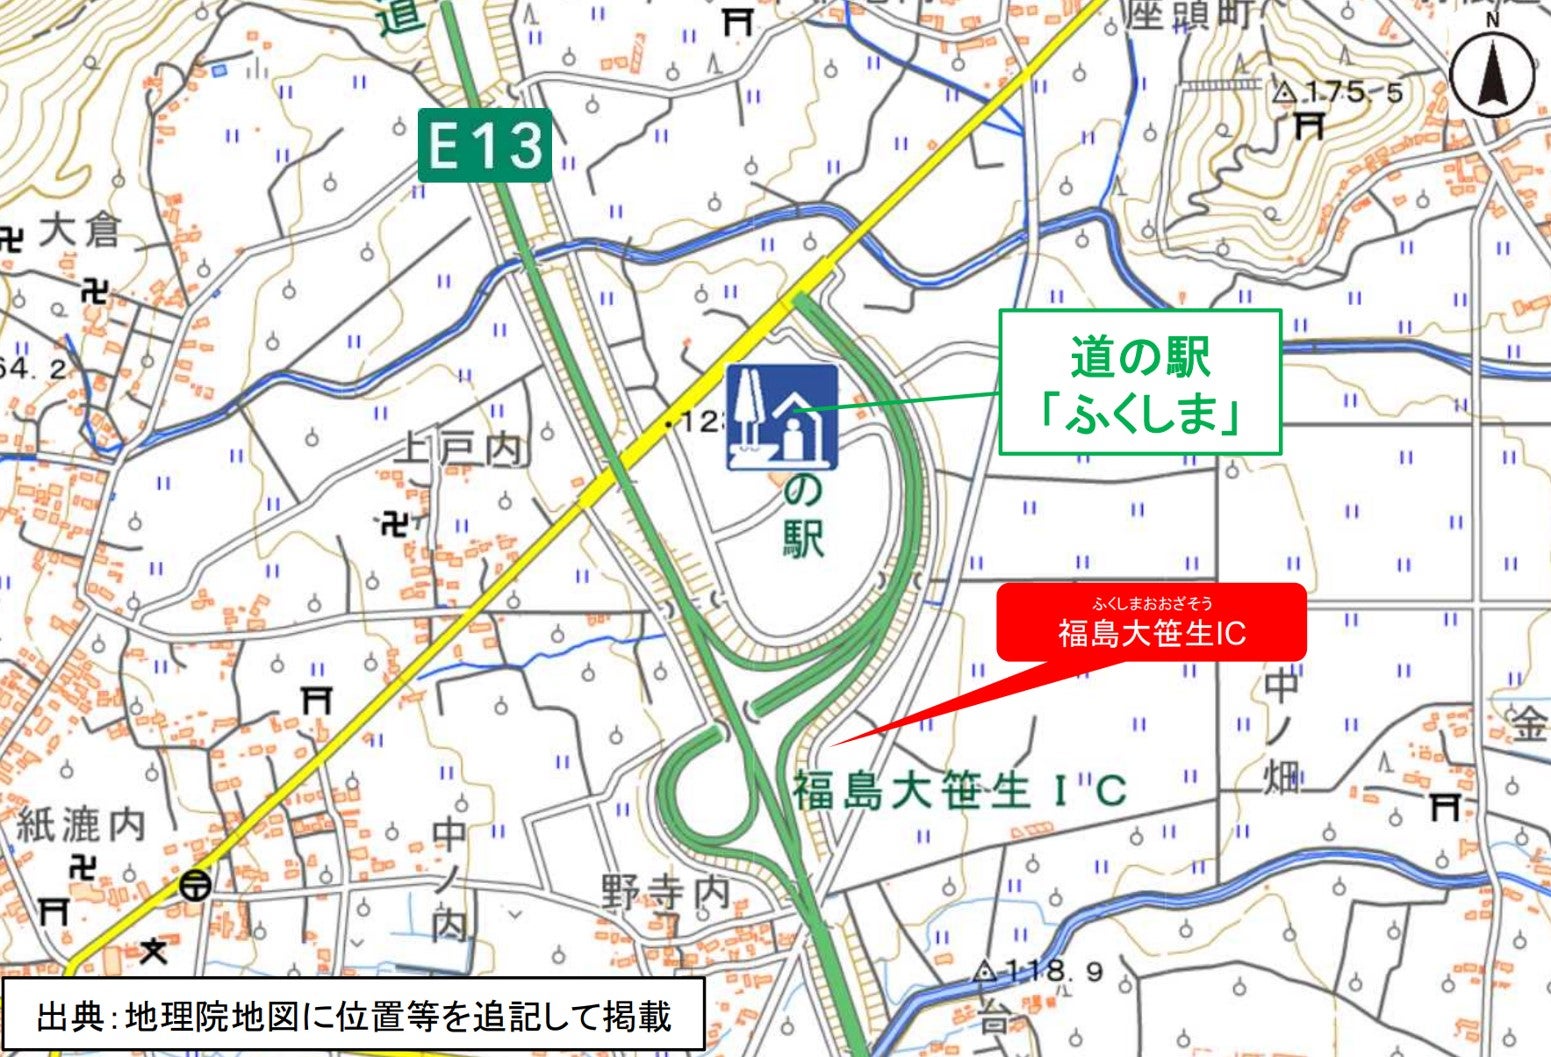 東北中央道福島大笹生ICと道の駅ふくしまの位置関係